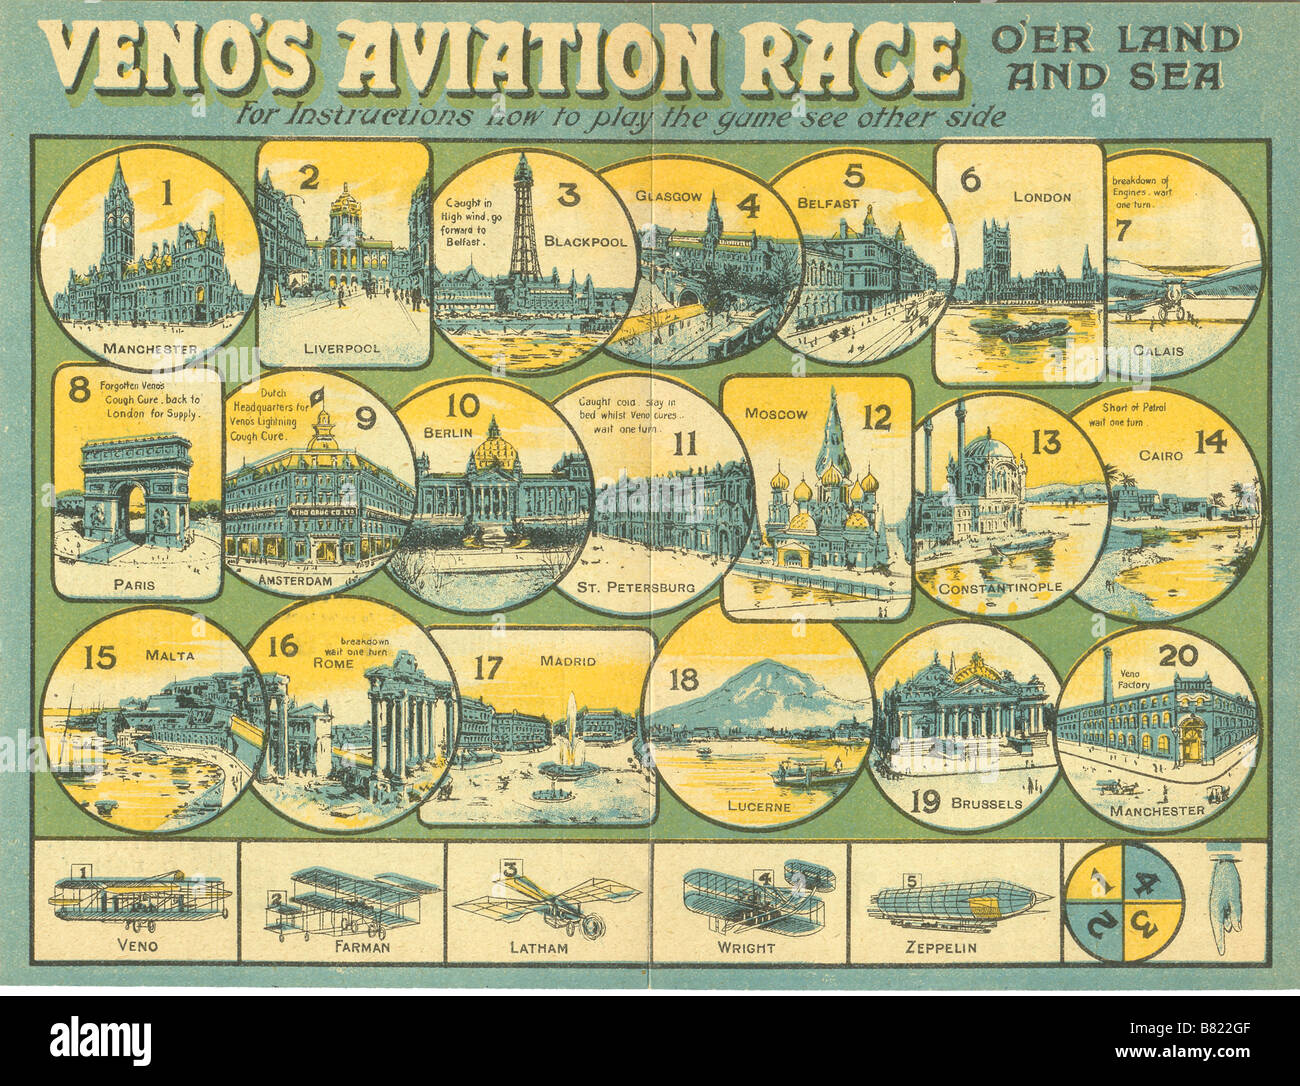 La course de l'Aviation veino feuille - un cadeau publicitaire vers 1914 Banque D'Images